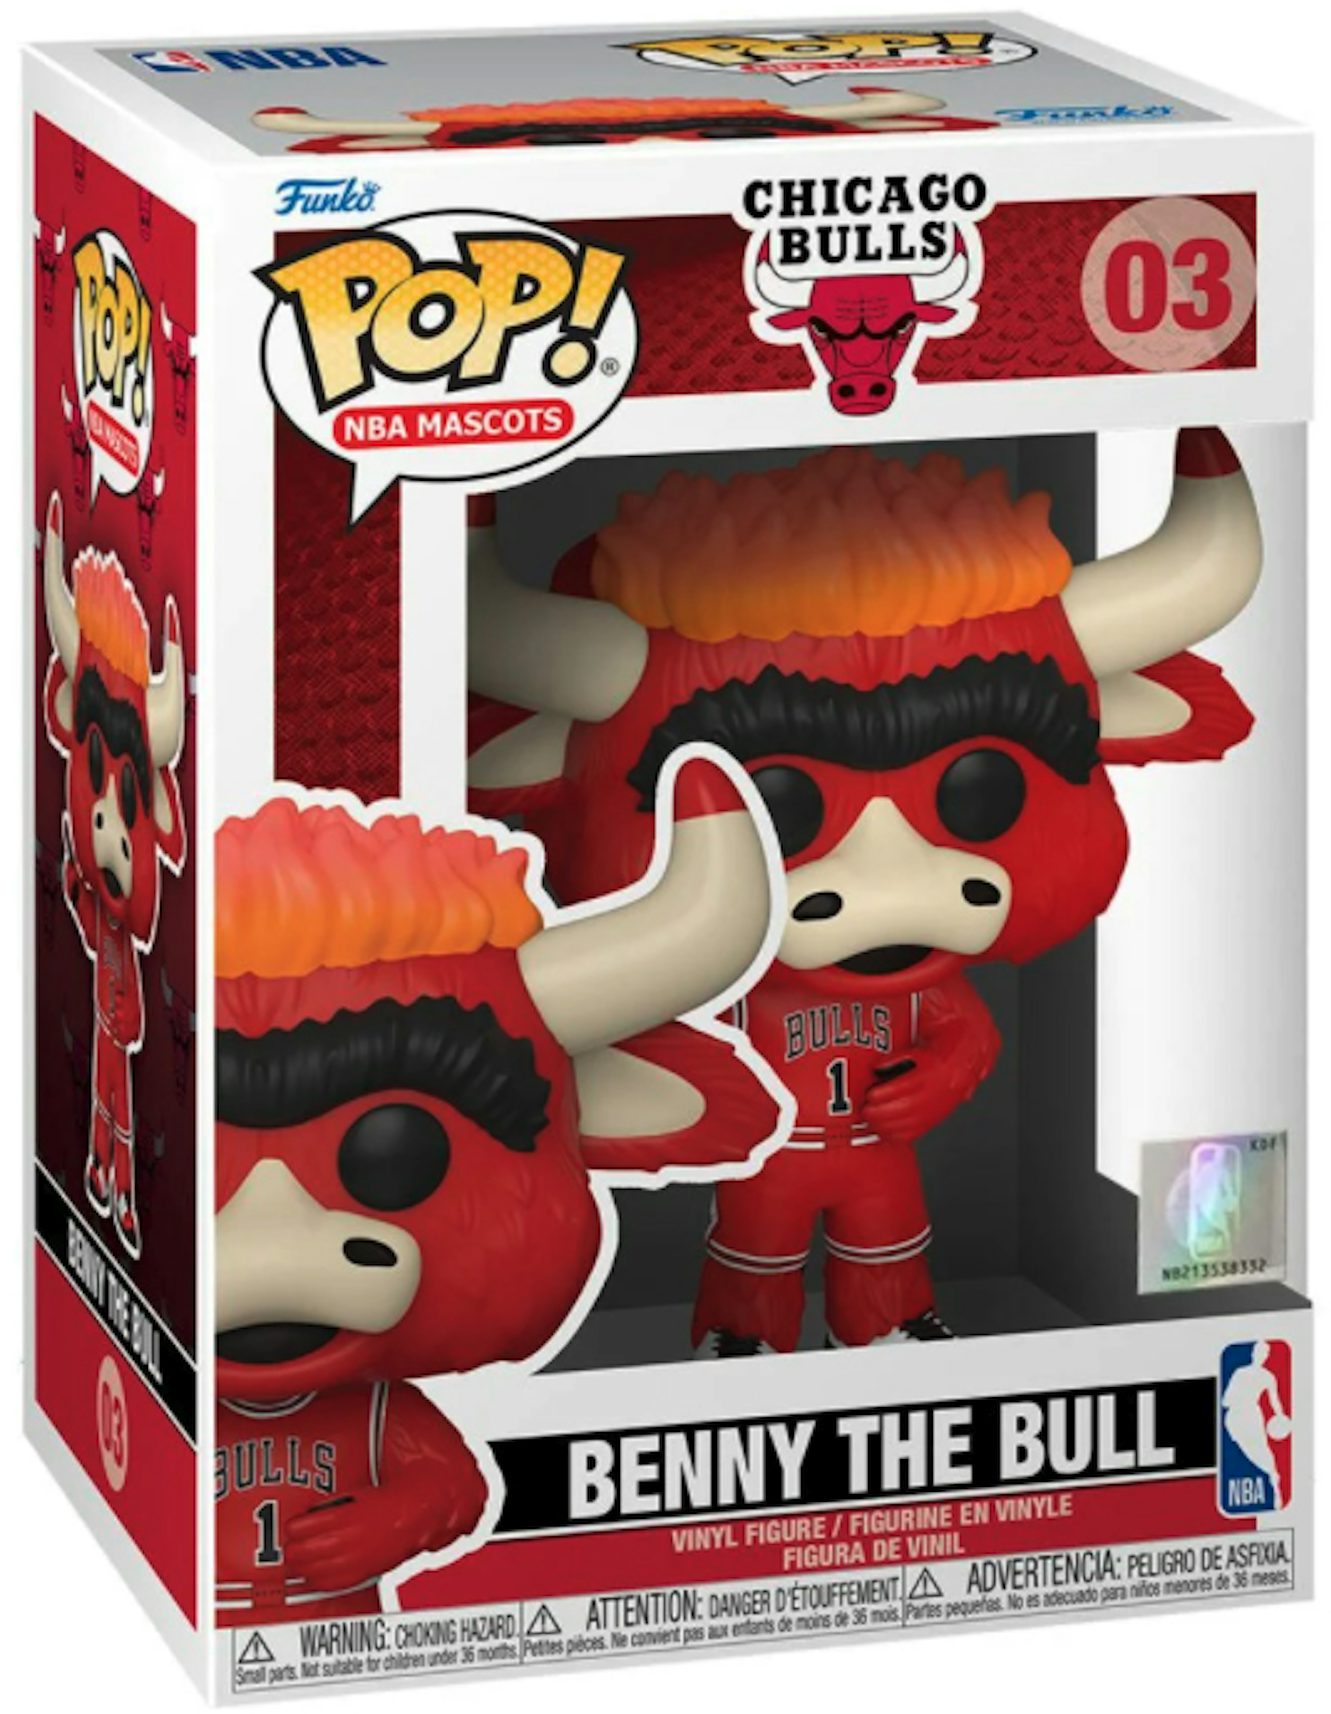 Chicago Bulls Mascot Baller Bobblehead